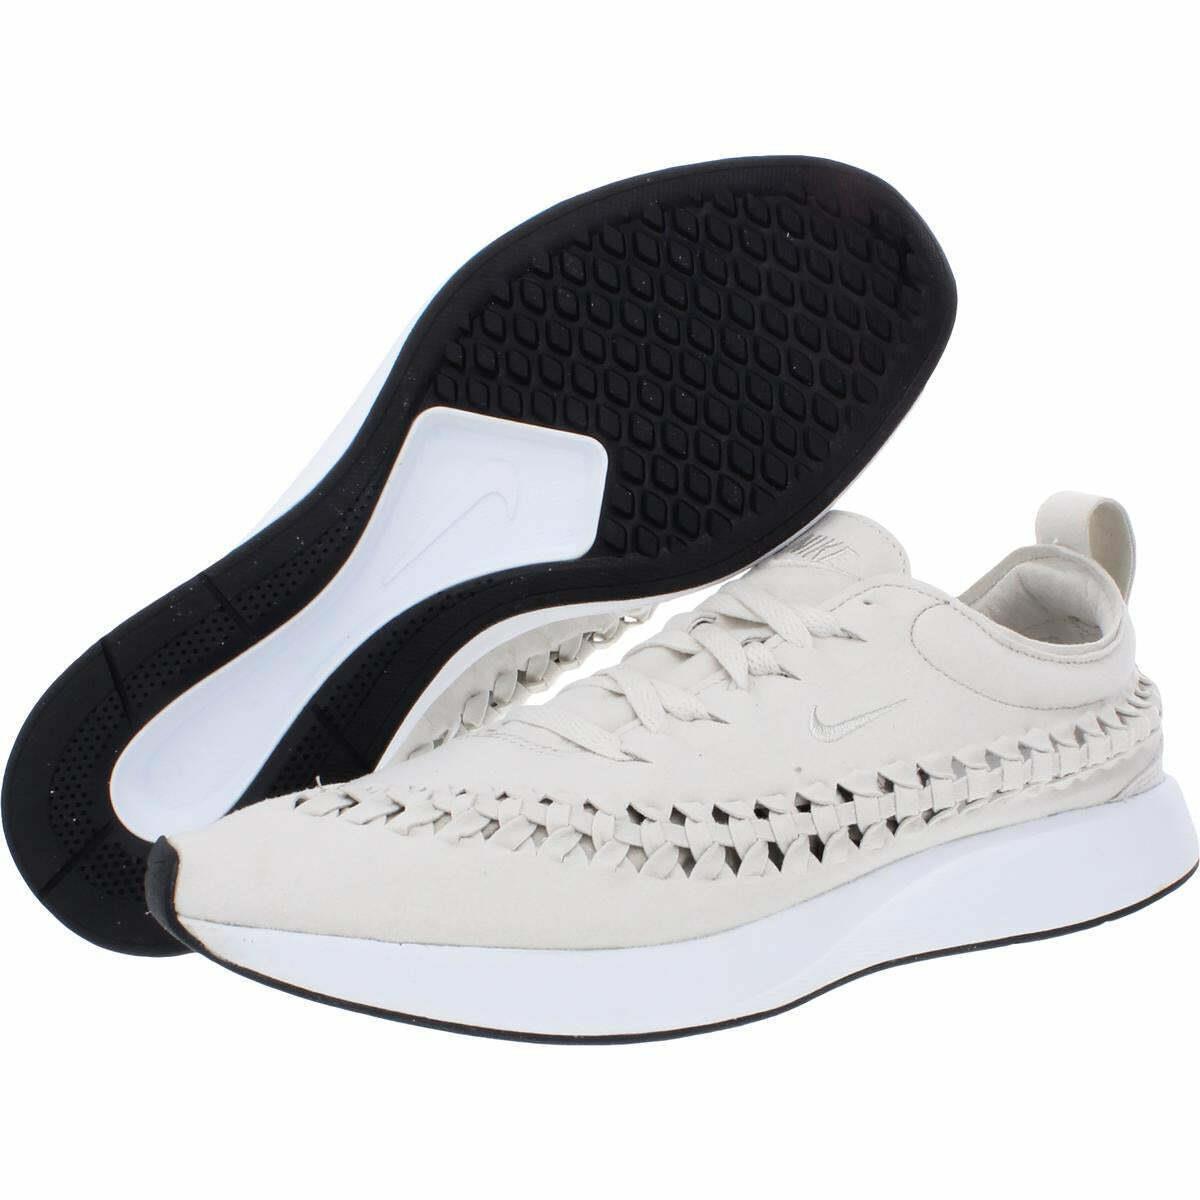 Nike shoes Dualtone Racer - Light Bone/White-Black 1